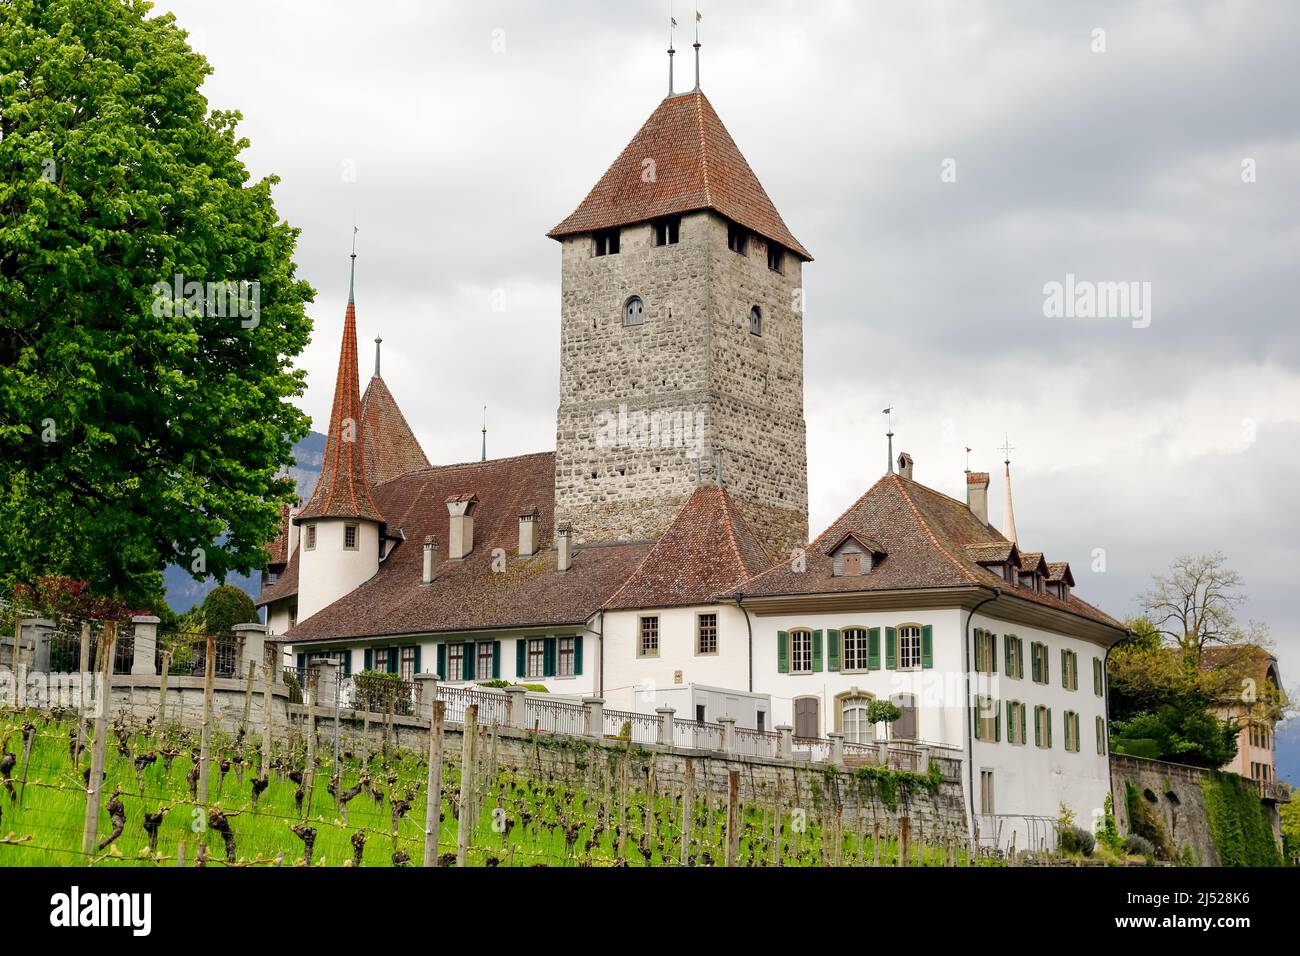 Spiez, Suiza - 17 Abril 2017: El Castillo de Spiez se puede ver en una colina contra un cielo nublado. Este sitio del patrimonio suizo se encuentra en el municipio de Spiez Foto de stock